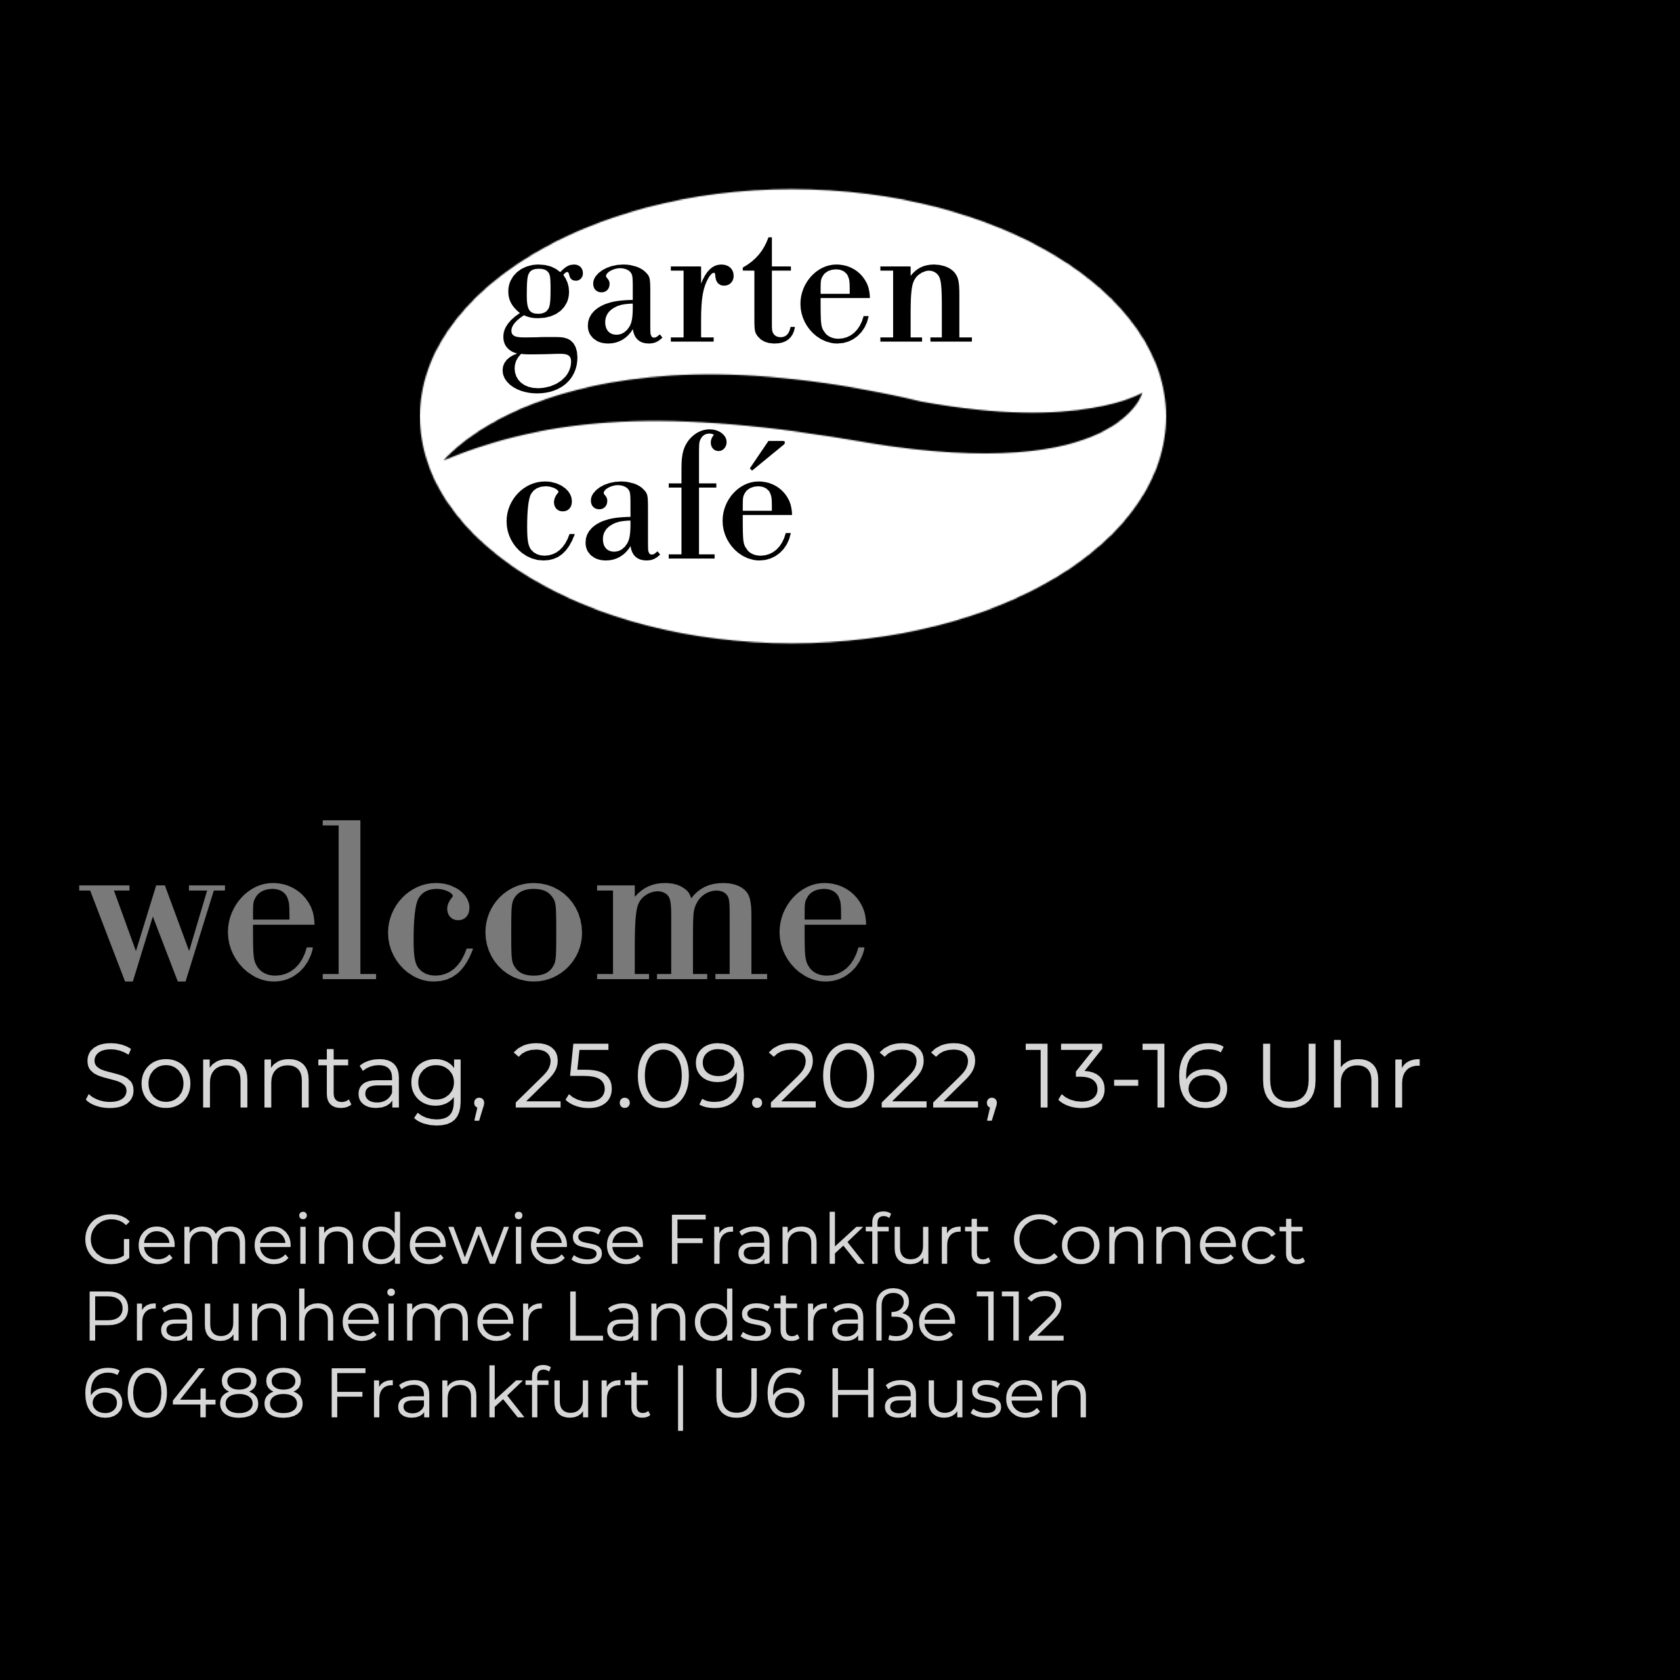 gartencafe_einladungskarte _220925.003